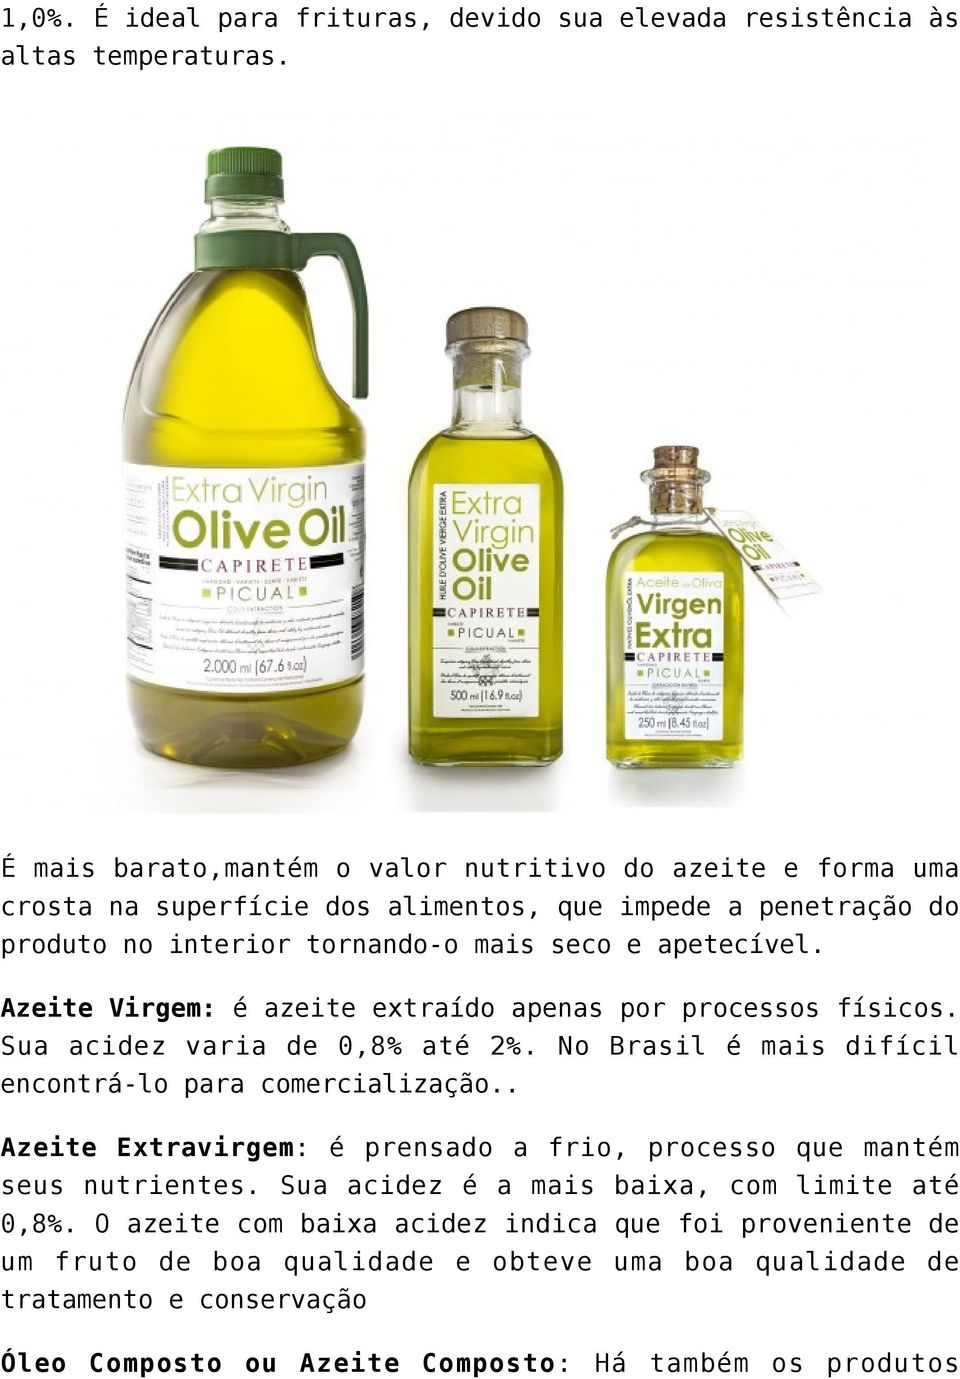 Azeite Virgem: é azeite extraído apenas por processos físicos. Sua acidez varia de 0,8% até 2%. No Brasil é mais difícil encontrá-lo para comercialização.